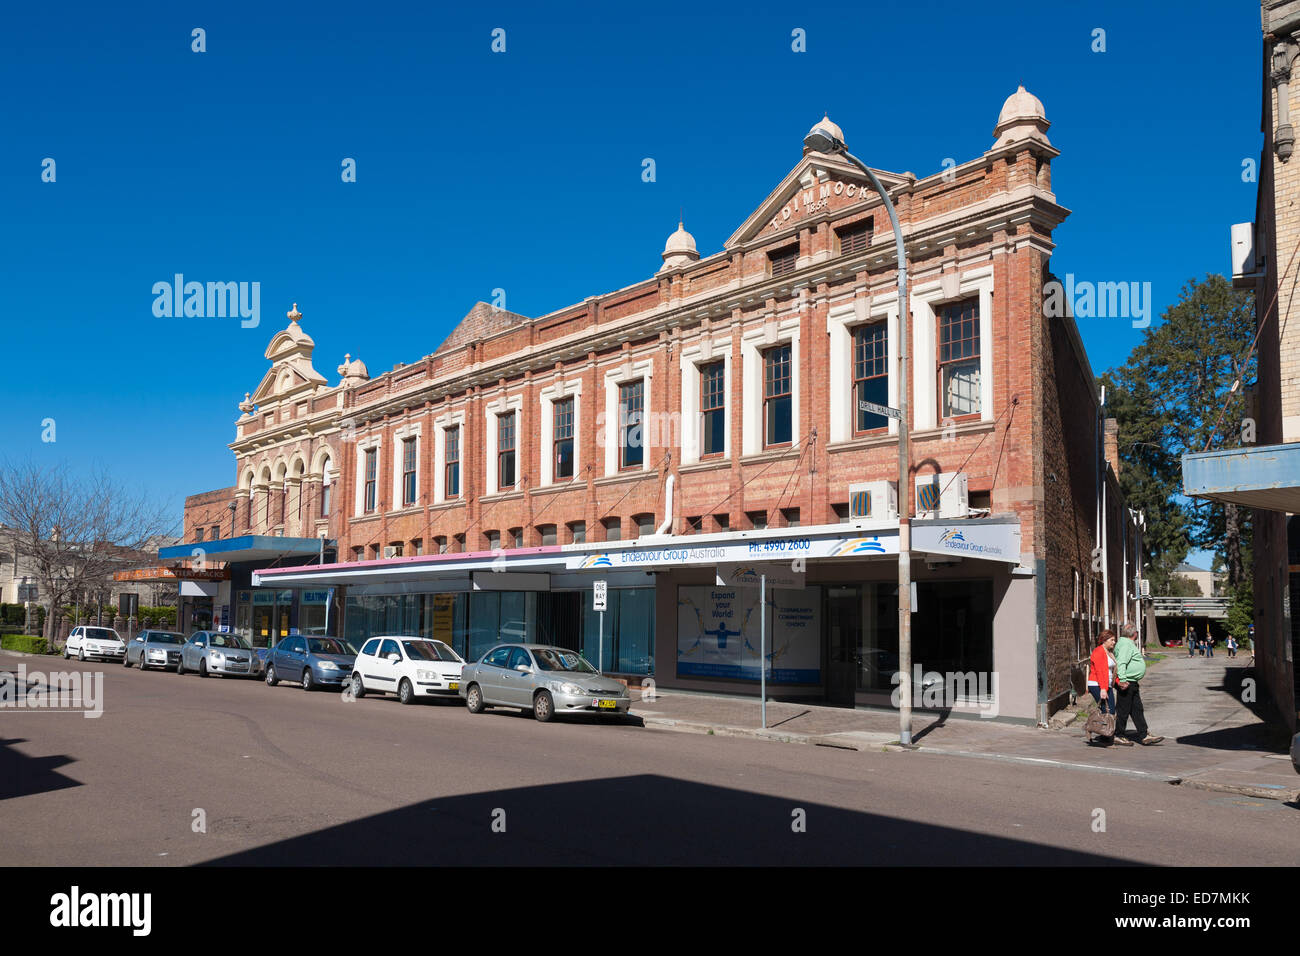 Architecture historique en vue de détail recommandés à Maitland dans la Hunter Valley NSW Australie Banque D'Images